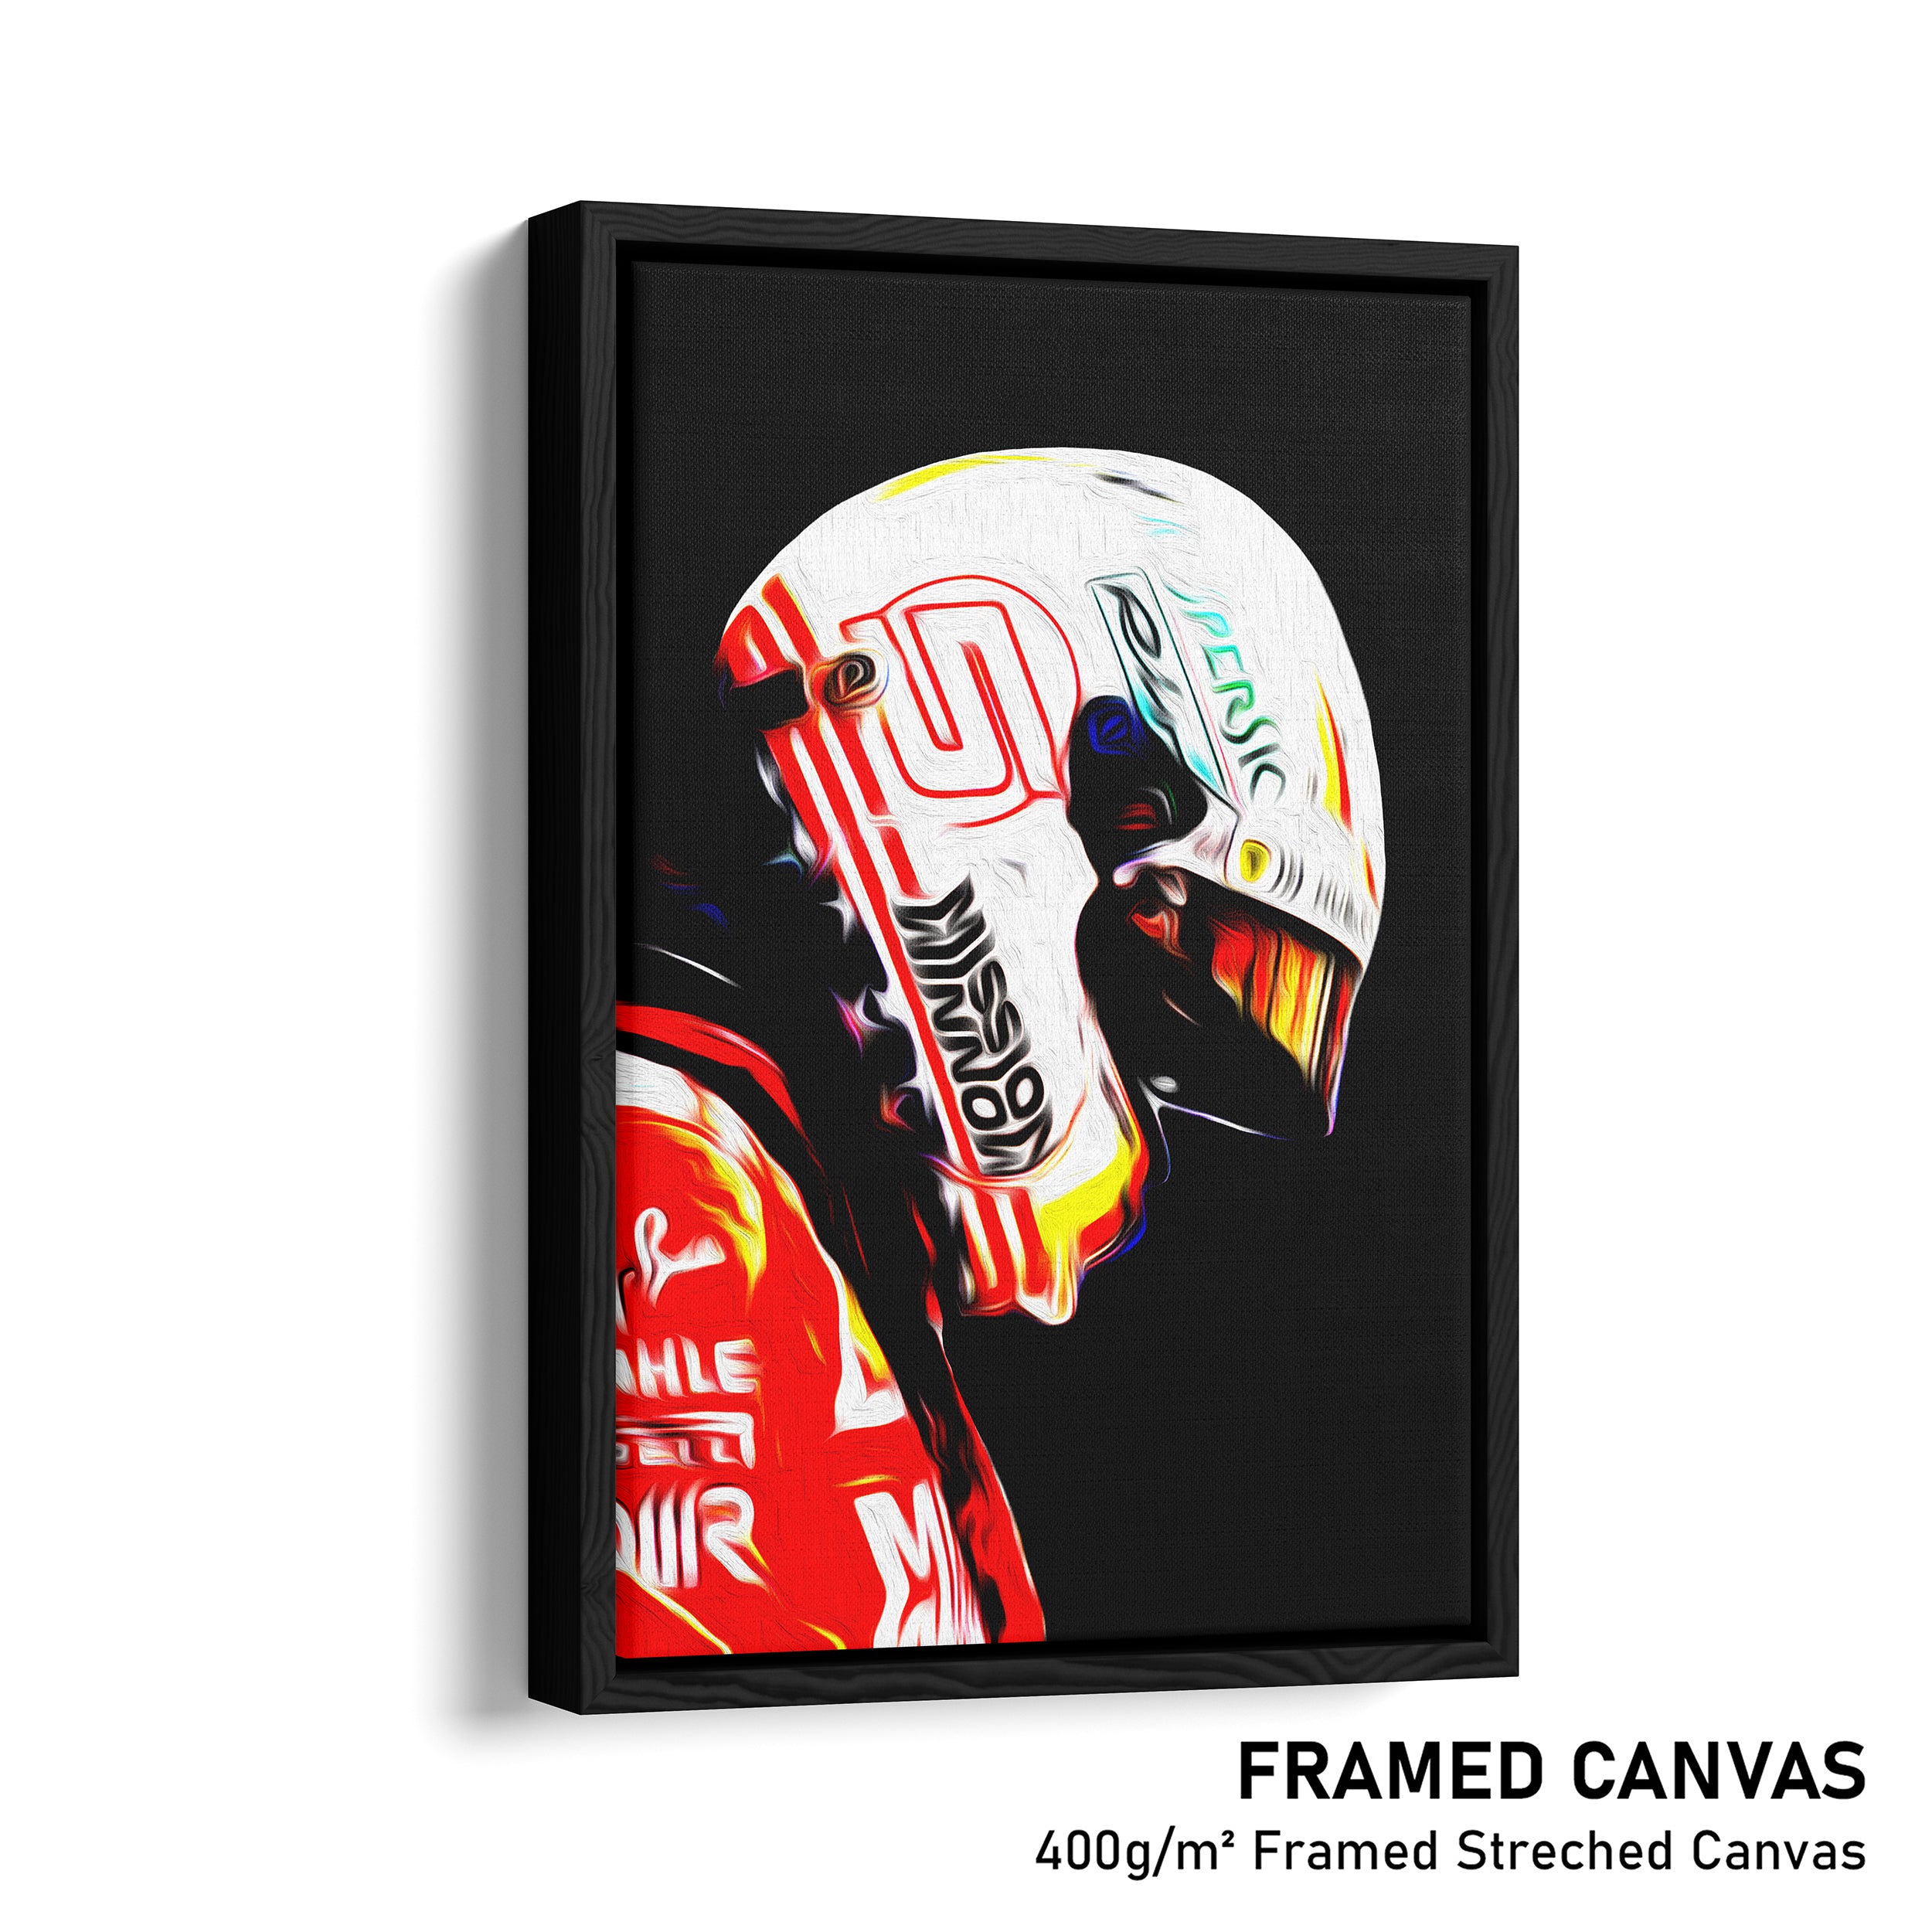 Sebastian Vettel, Ferrari 2018 - Formula 1 Print